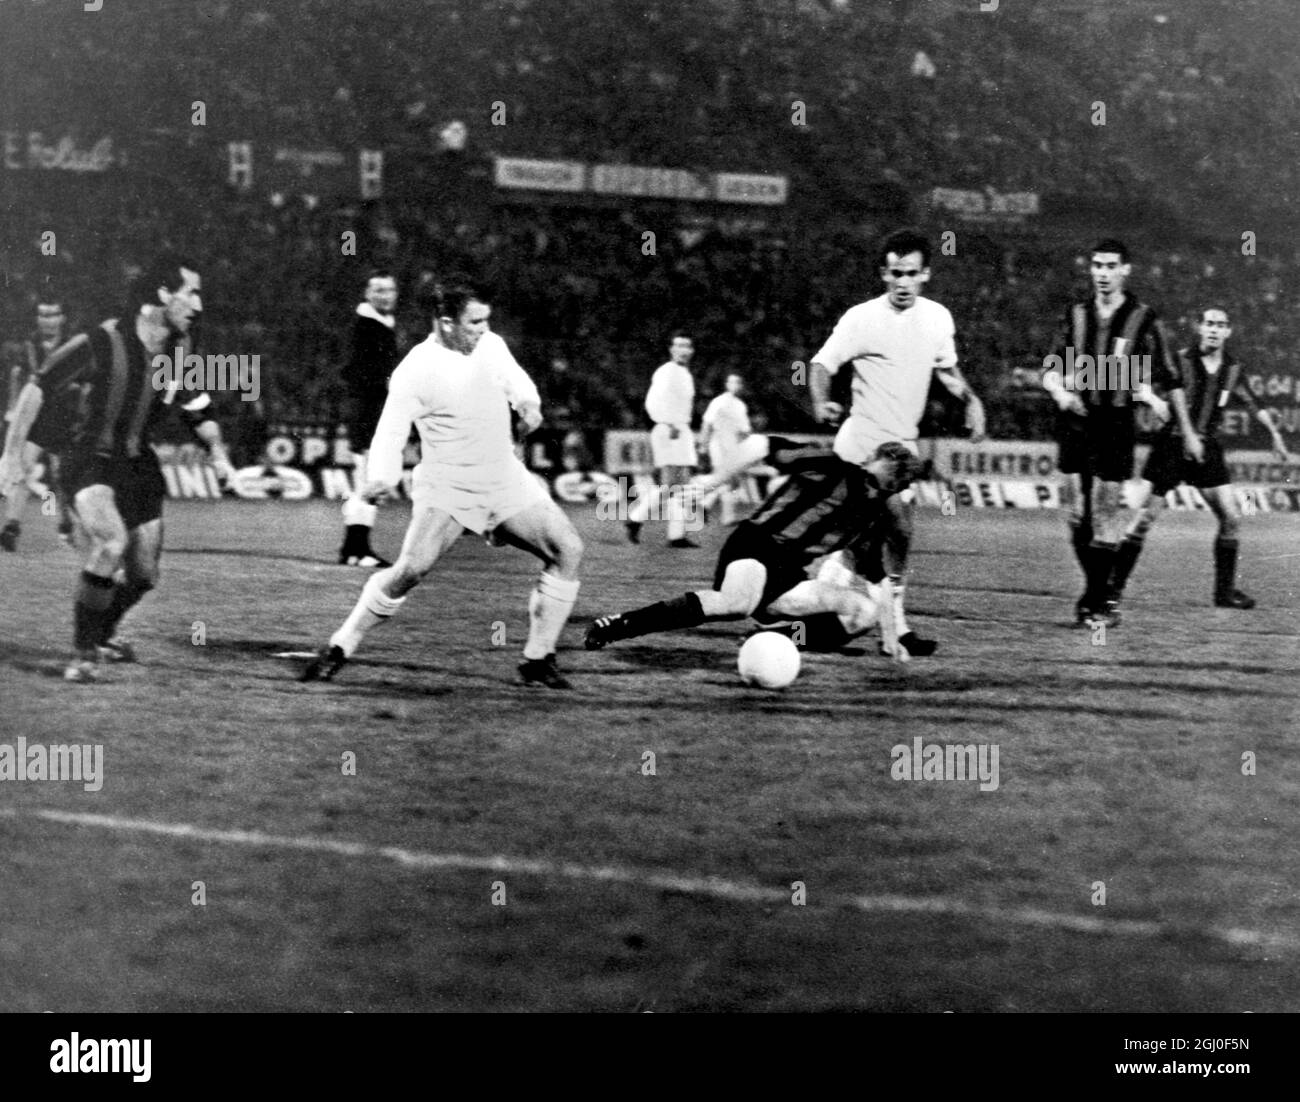 Real Madrids Ferenc Puskas (in weiß, links) und Felo (weiß, rechts) in einem Gefecht gegen Inter Mailands Guarneri (Mitte) während des Finales des Europacups in Wien. Inter besiegte Real Madrid mit drei Toren zu einem, um zum ersten Mal den Pokal zu holen. Mai 1964. Stockfoto